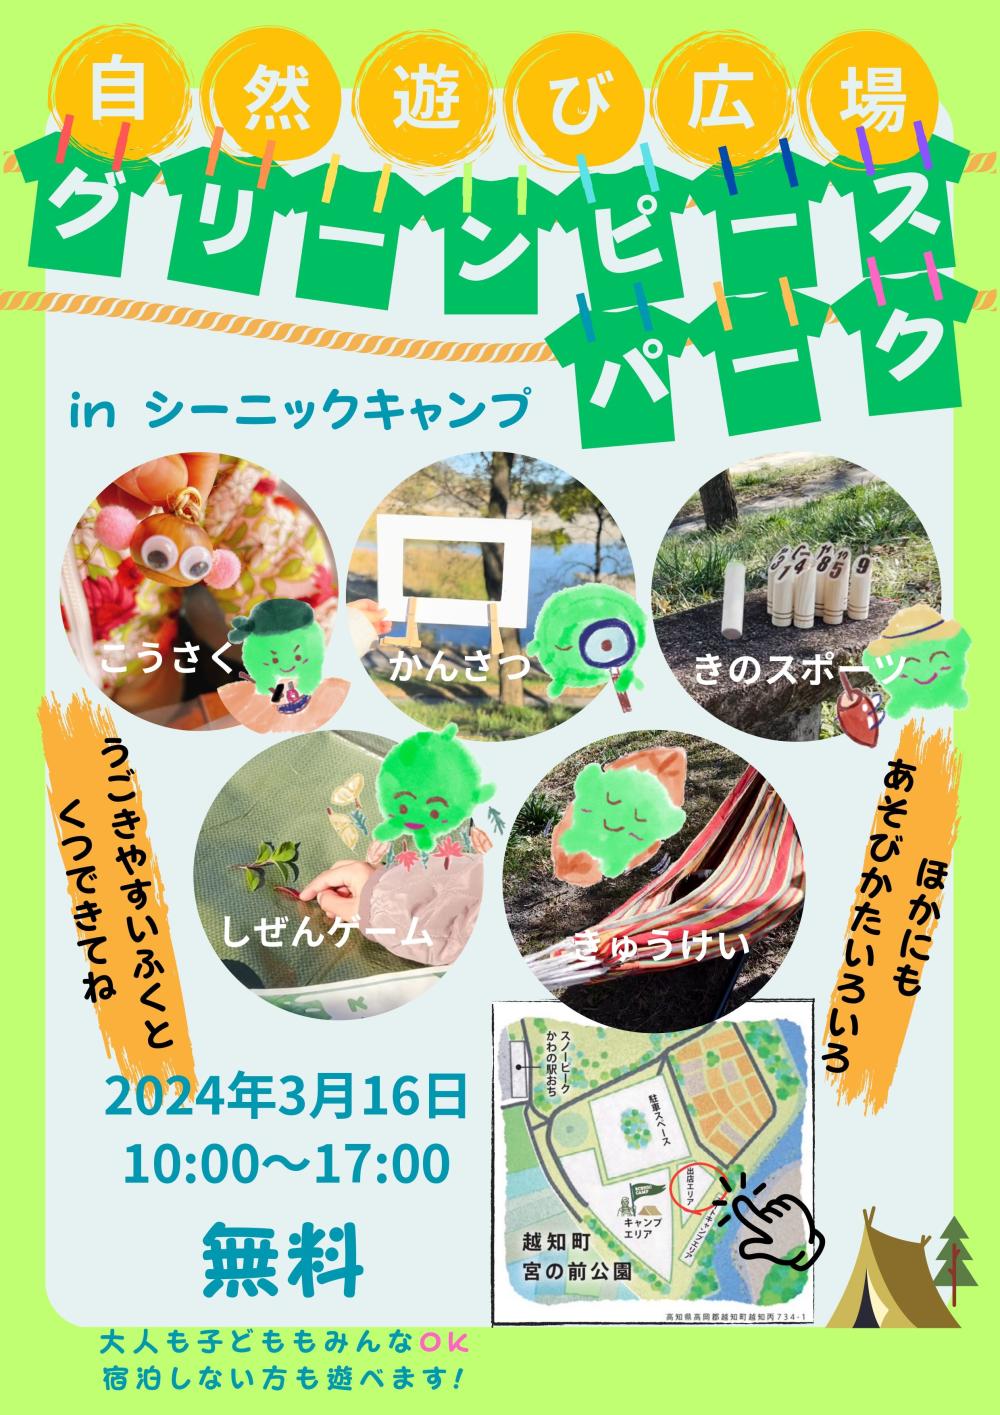  シーニックキャンプ 100 People  Camp  in  越知町宮の前公園